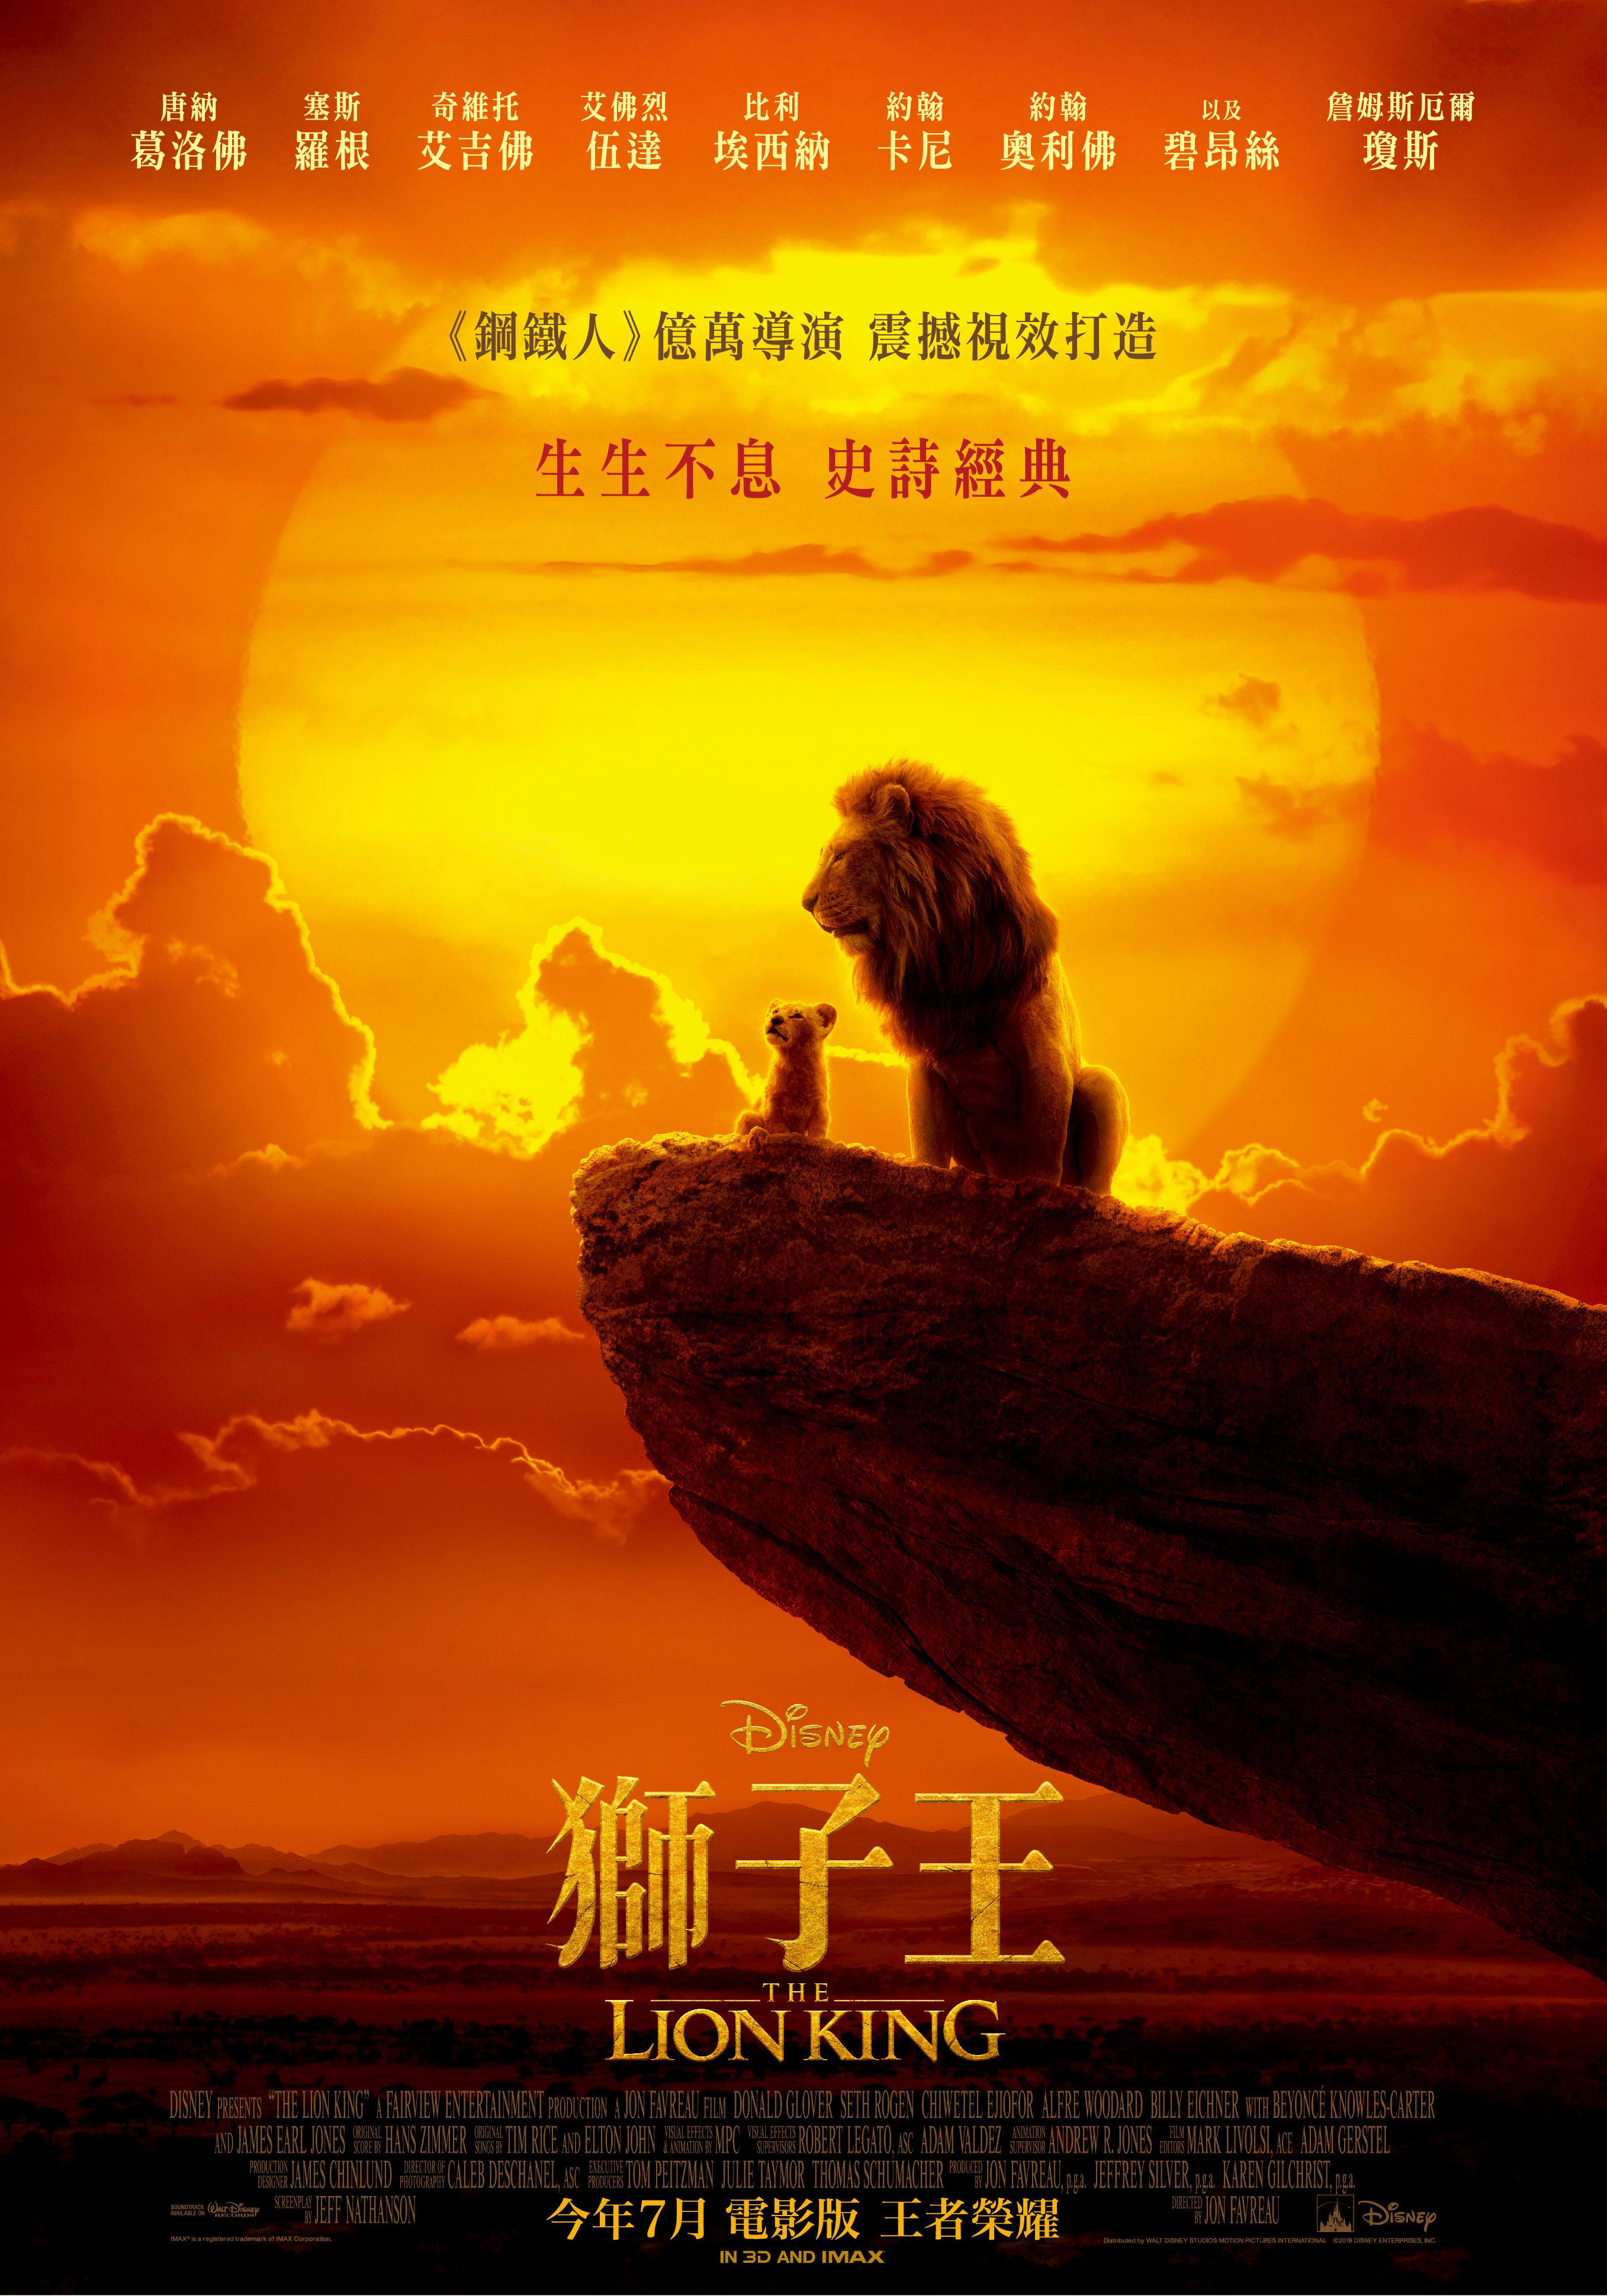 狮子王 / 狮子王真人版【原盘DIY台配国语/粤语 简繁/双语特效字幕】“修复蓝光机黑屏问题” The Lion King 2019 1080p V2 Blu-ray AVC DTS-HD MA 7.1-Thor@HDSky[42.52 GB]-5.jpg